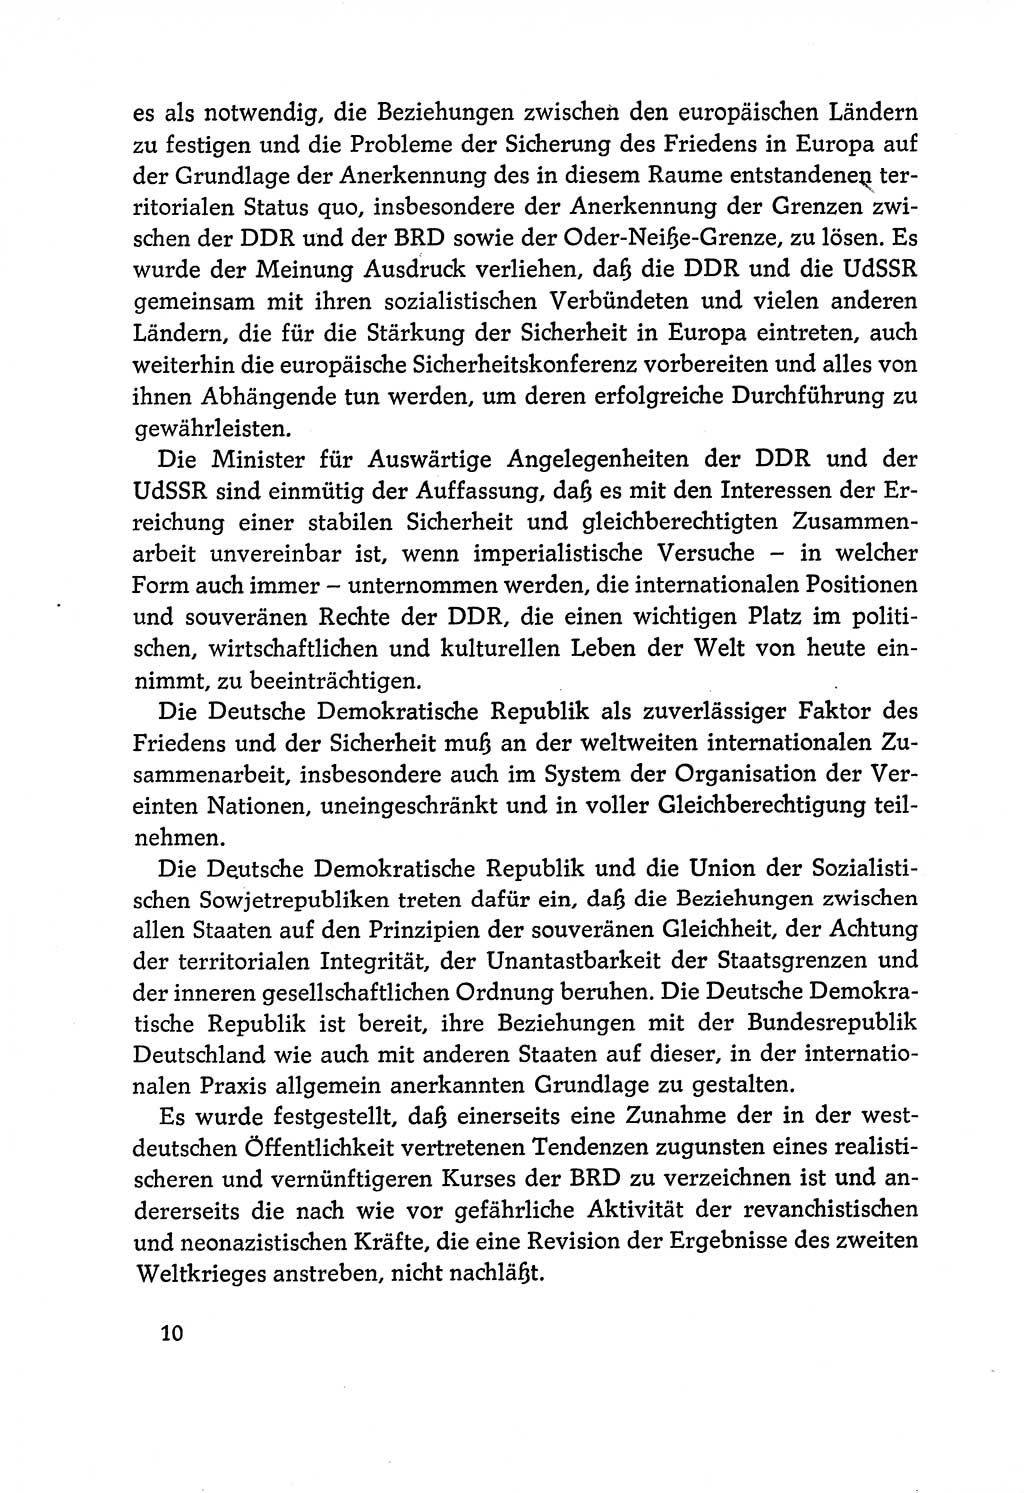 Dokumente der Sozialistischen Einheitspartei Deutschlands (SED) [Deutsche Demokratische Republik (DDR)] 1970-1971, Seite 10 (Dok. SED DDR 1970-1971, S. 10)